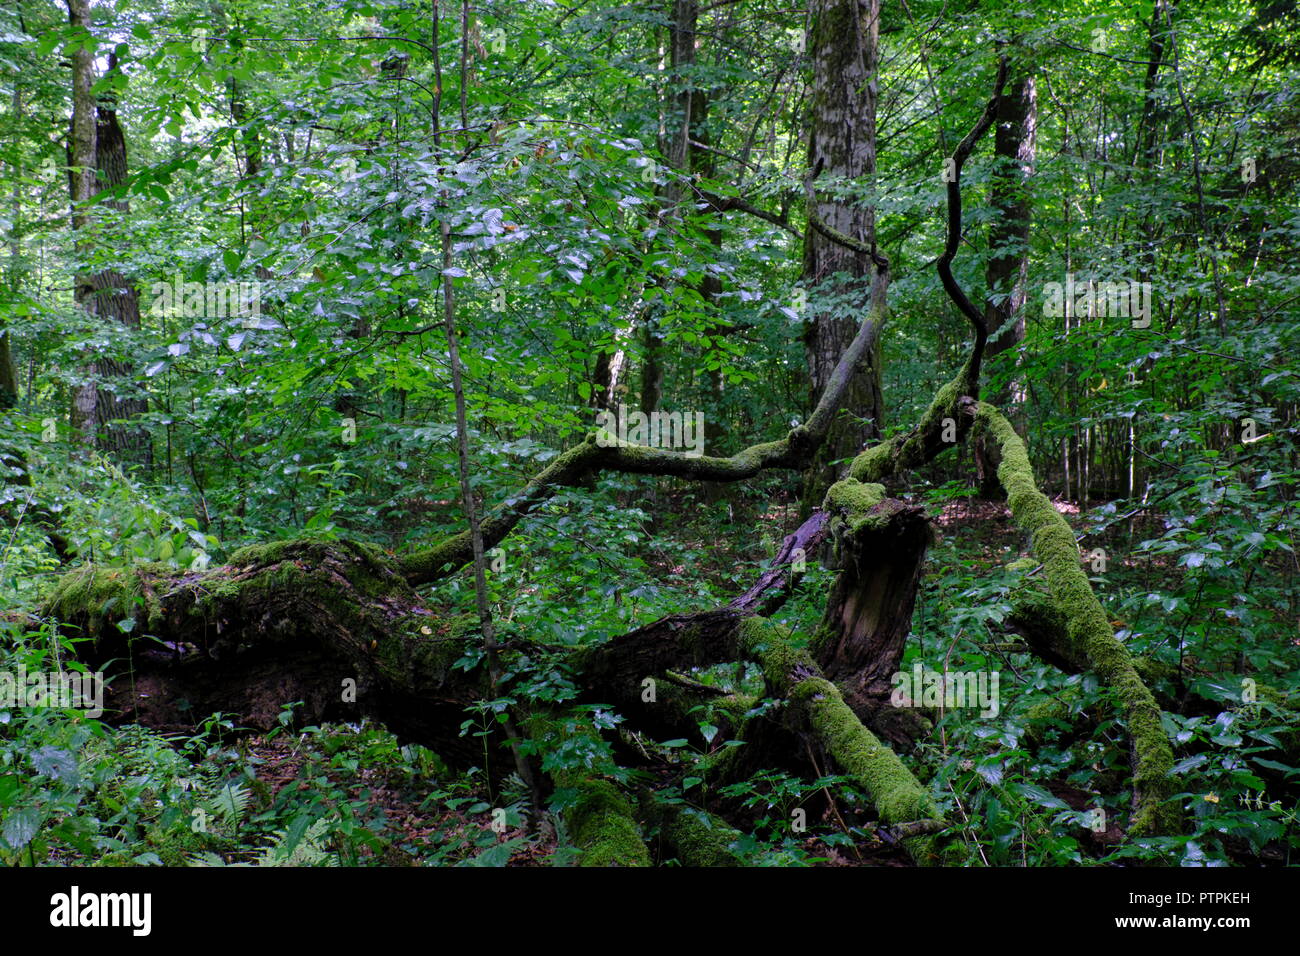 Parte declinato vecchia quercia ramo reww natureal e bosco di latifoglie in estate,Foresta di Bialowieza, Polonia, Europa Foto Stock